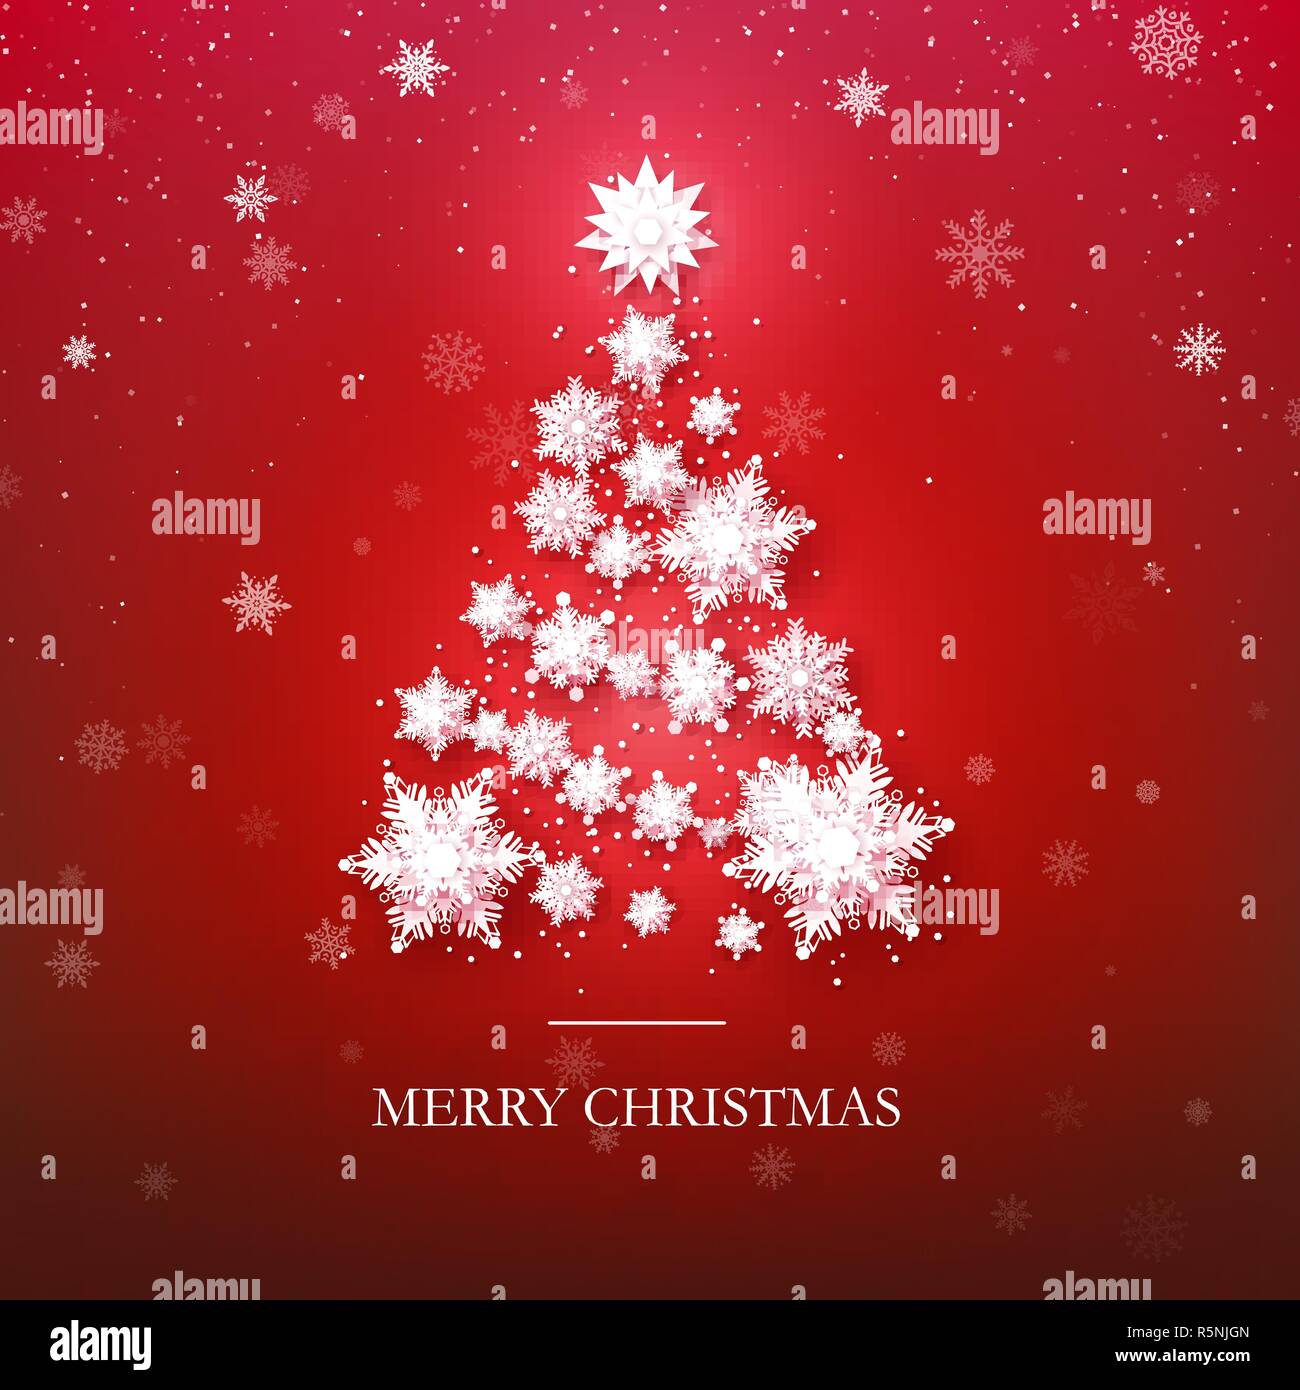 Schneeflocke Christmas Tree Design. Papier Schneeflocken gemacht Neues Jahr Baum Silhouette. Abstrakte Urlaub Hintergrund. Vector Illustration auf rotem Hintergrund Stock Vektor